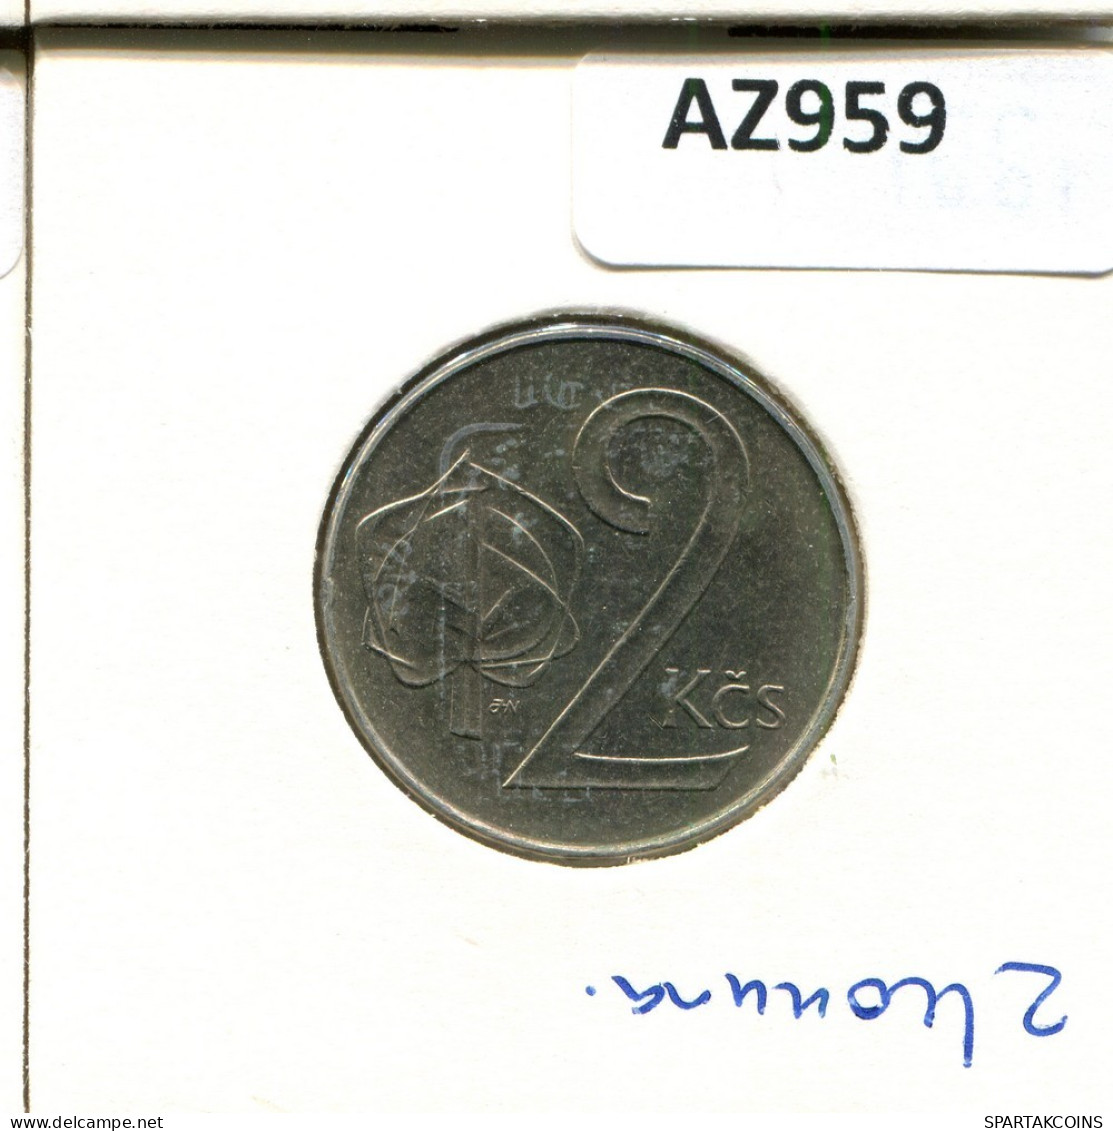 2 KORUN 1991 TSCHECHOSLOWAKEI CZECHOSLOWAKEI SLOVAKIA Münze #AZ959.D.A - Cecoslovacchia